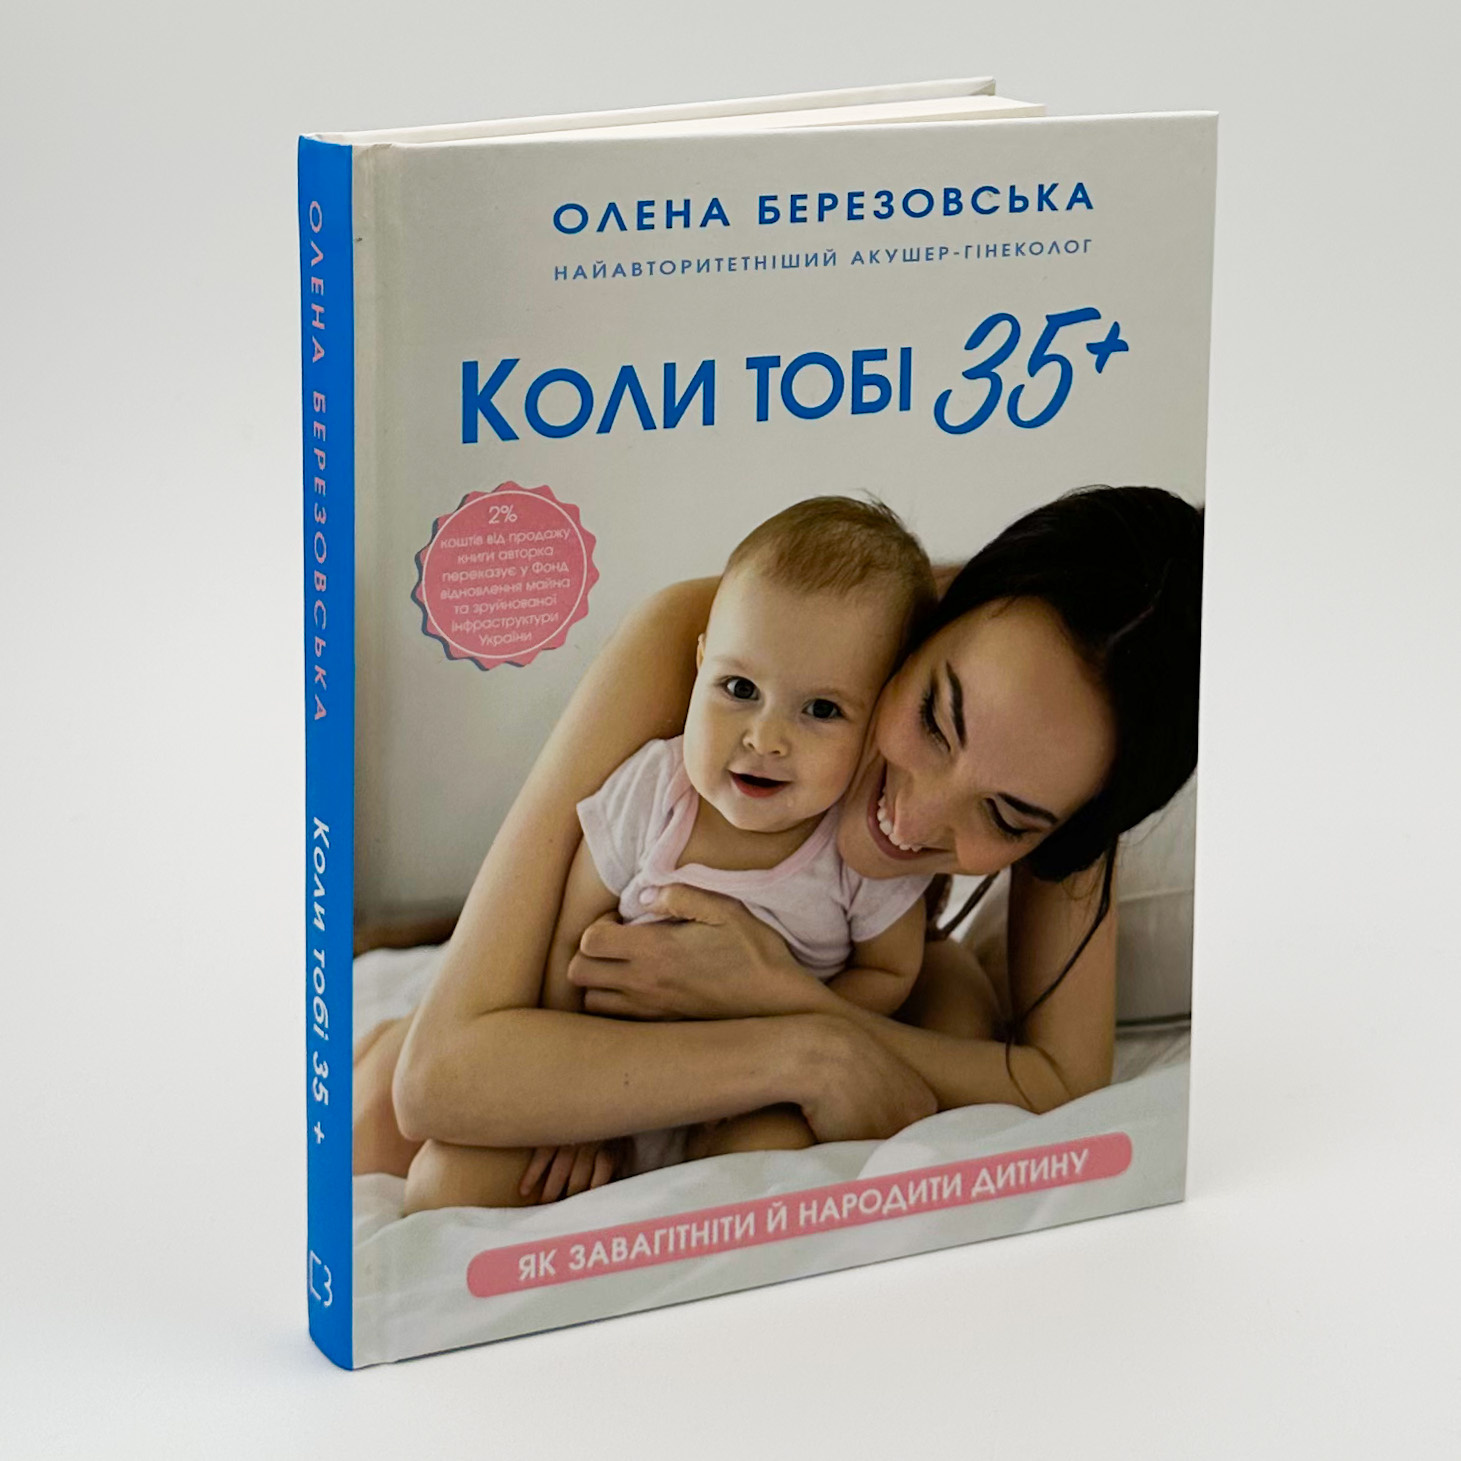 Коли тобі 35+. Як завагітніти й народити дитину  . Автор — Олена Березовська. 